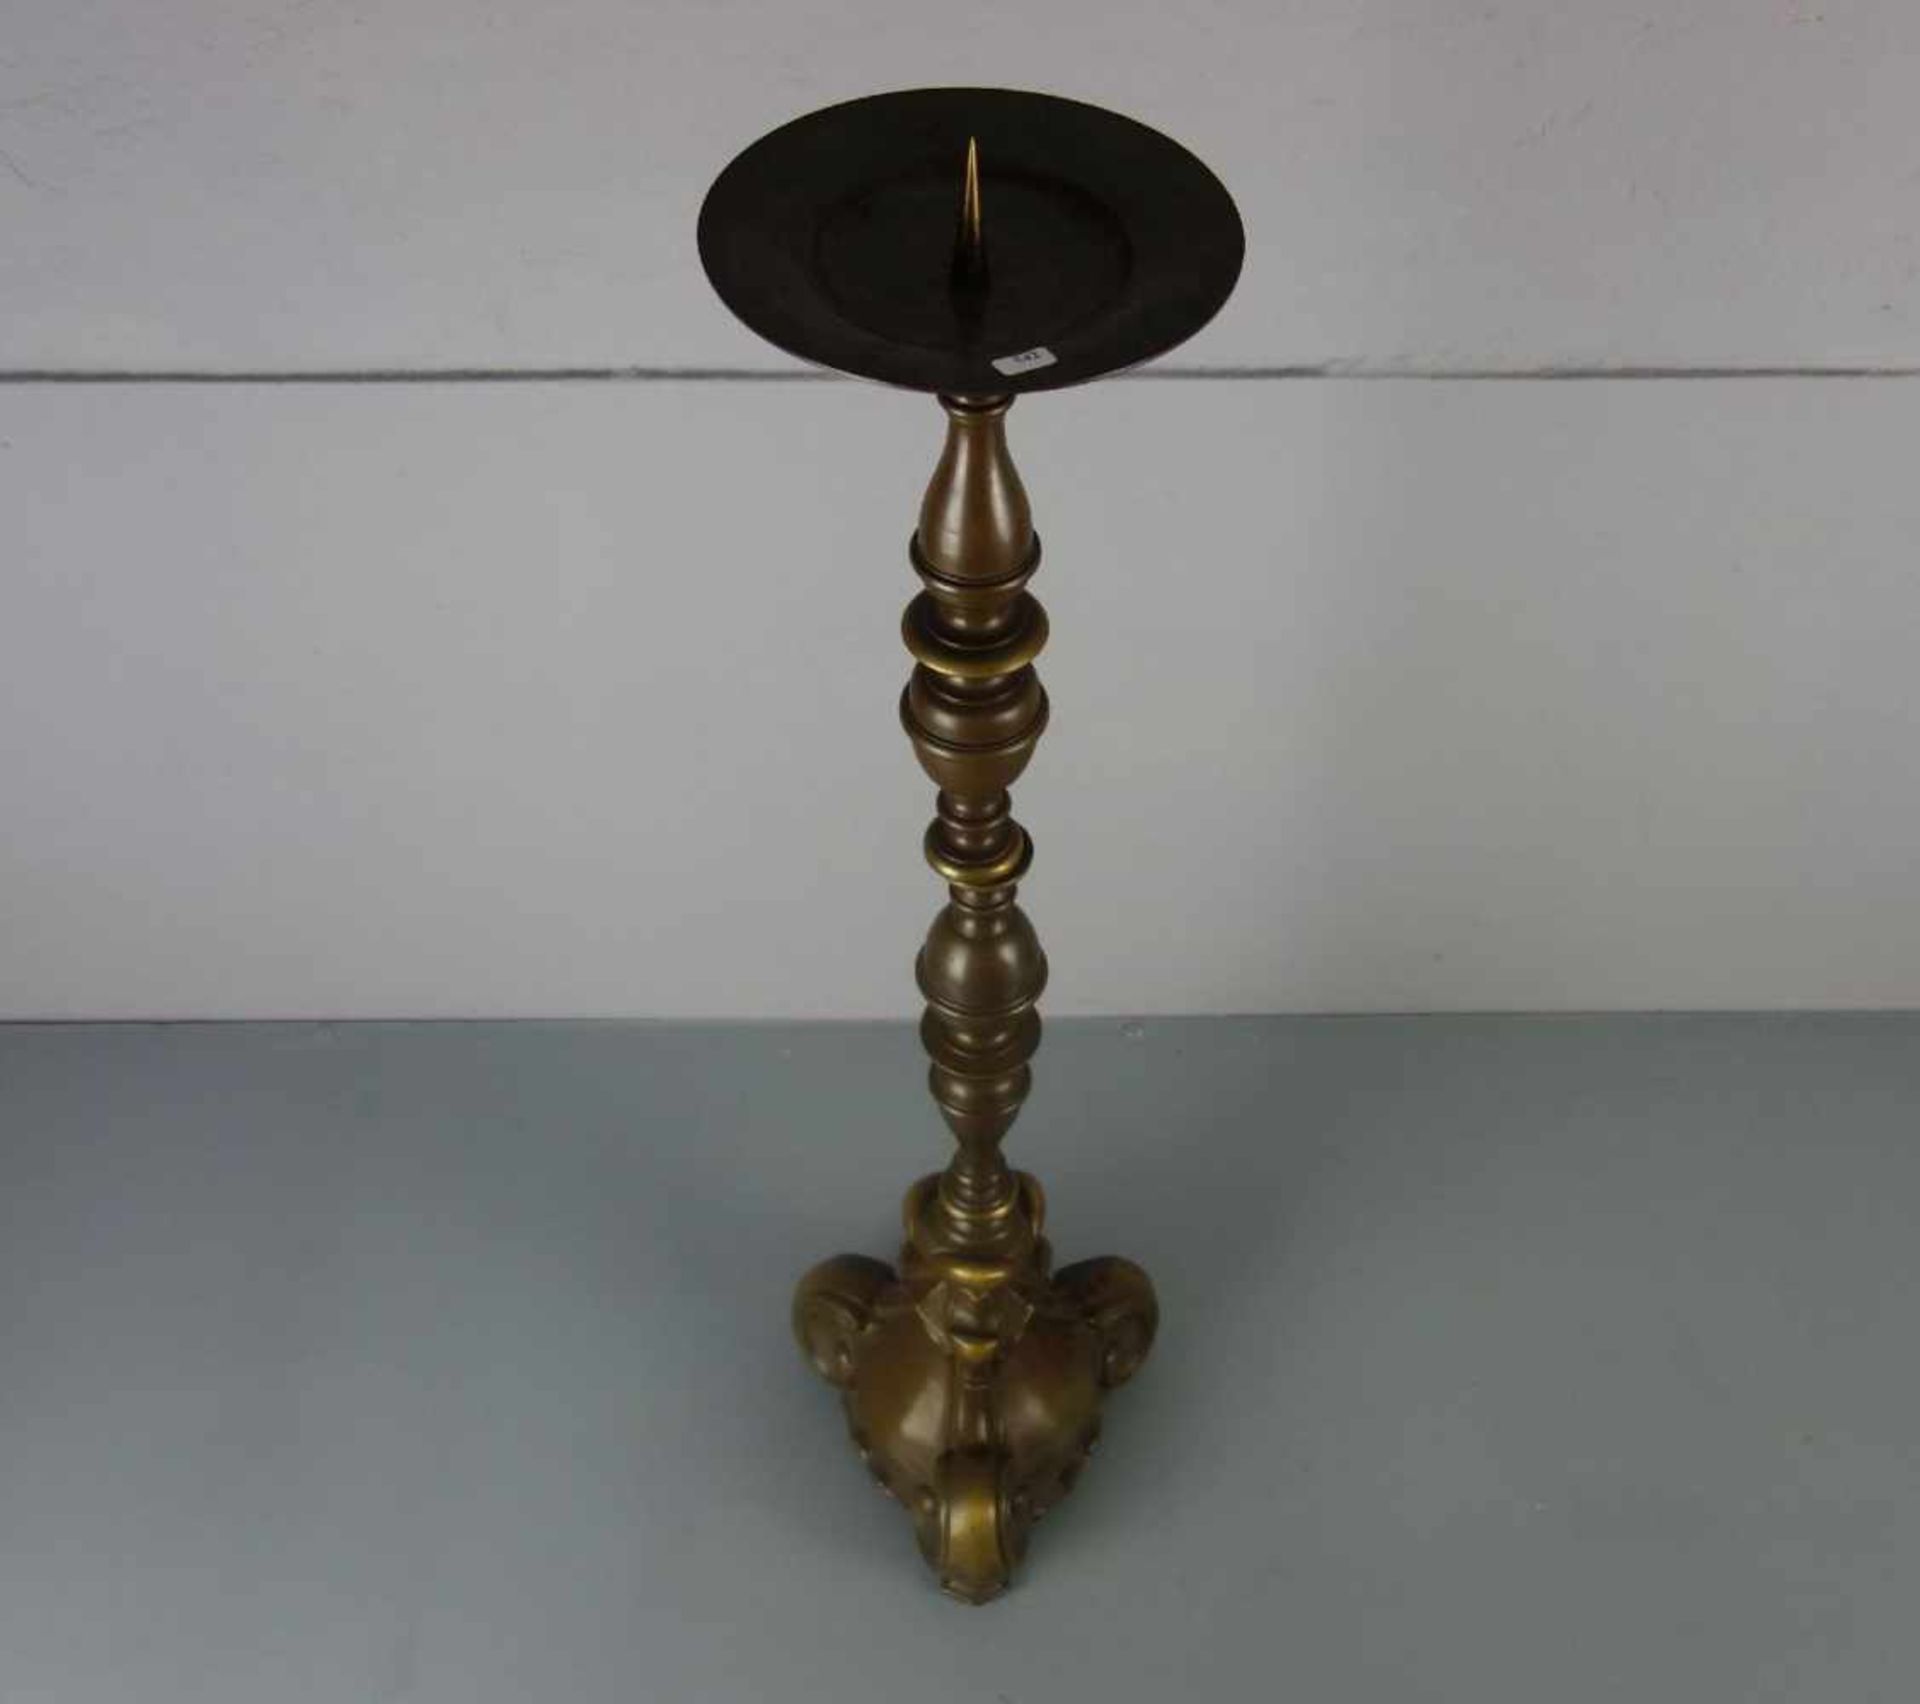 LEUCHTER / KERZENLEUCHTER / candle stand, Bronze, hellbraun patiniert mit goldfarbenen - Bild 2 aus 2